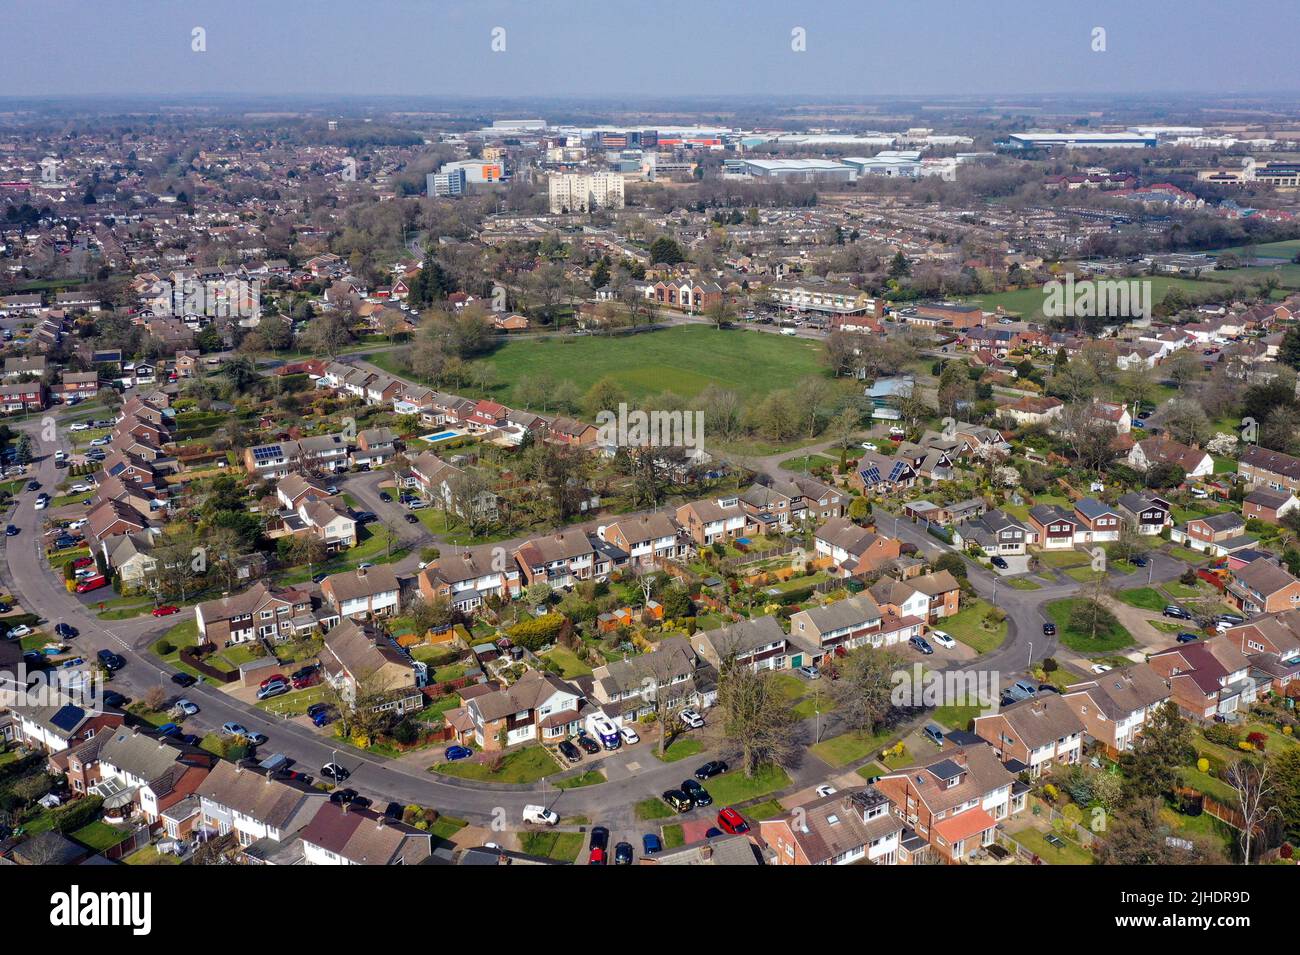 Photo de dossier datée du 27/0/20 d'une vue aérienne de Leverstock Green, près de Hemel Hempstead, comme le prix moyen sur une maison a atteint un record pour le sixième mois consécutif en juillet, selon un site de propriété. Banque D'Images